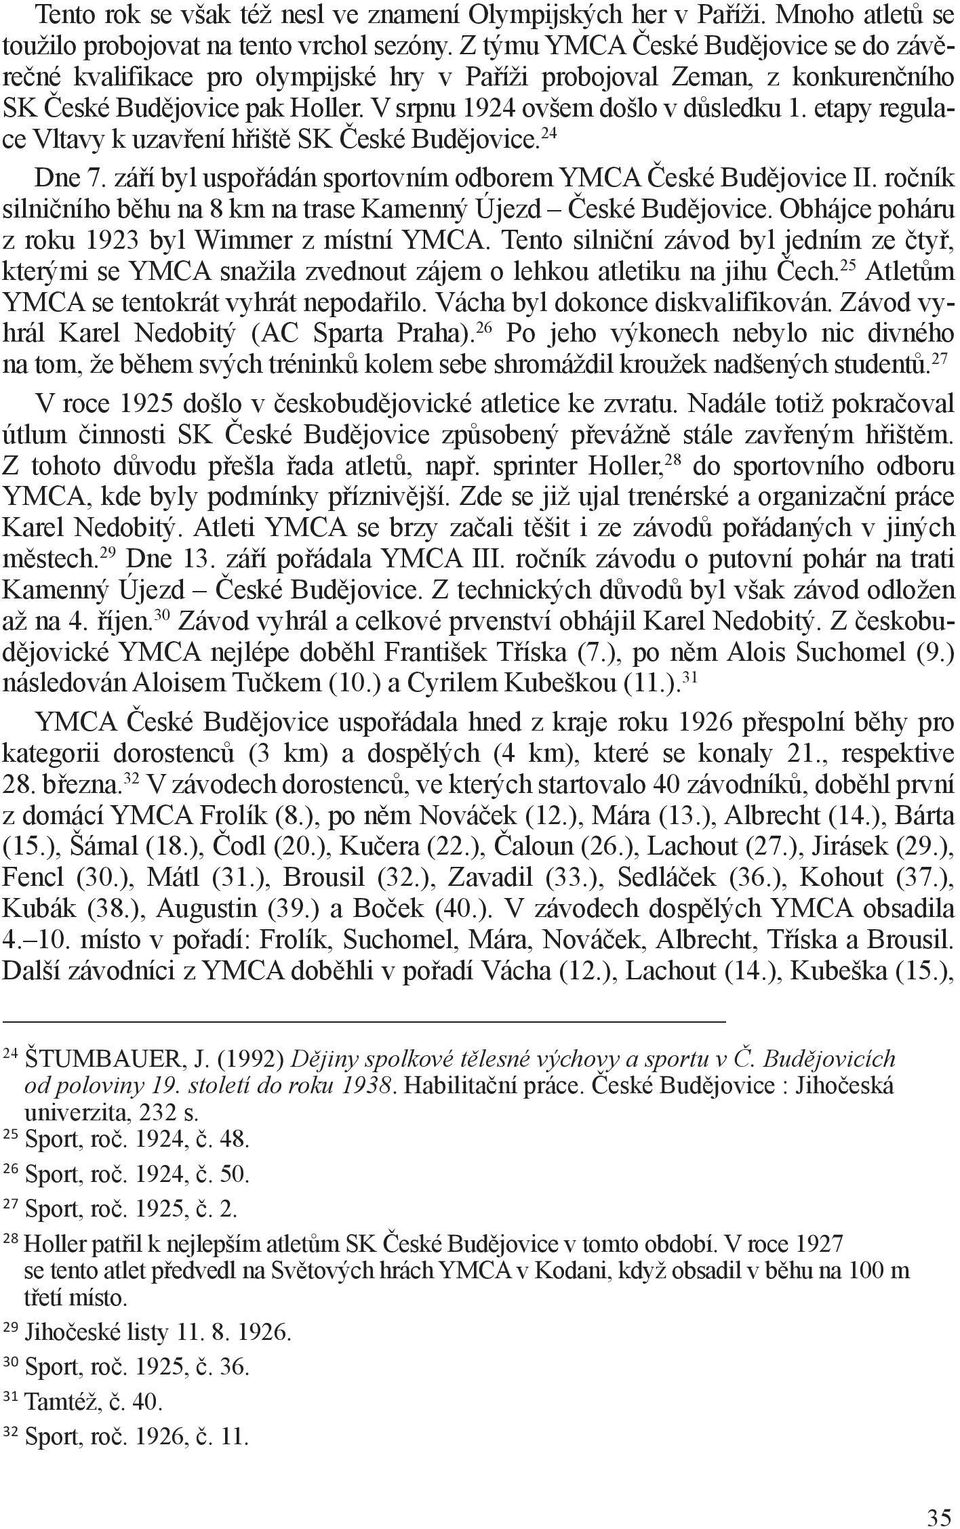 etapy regulace Vltavy k uzavření hřiště SK České Budějovice. 24 Dne 7. září byl uspořádán sportovním odborem YMCA České Budějovice II.